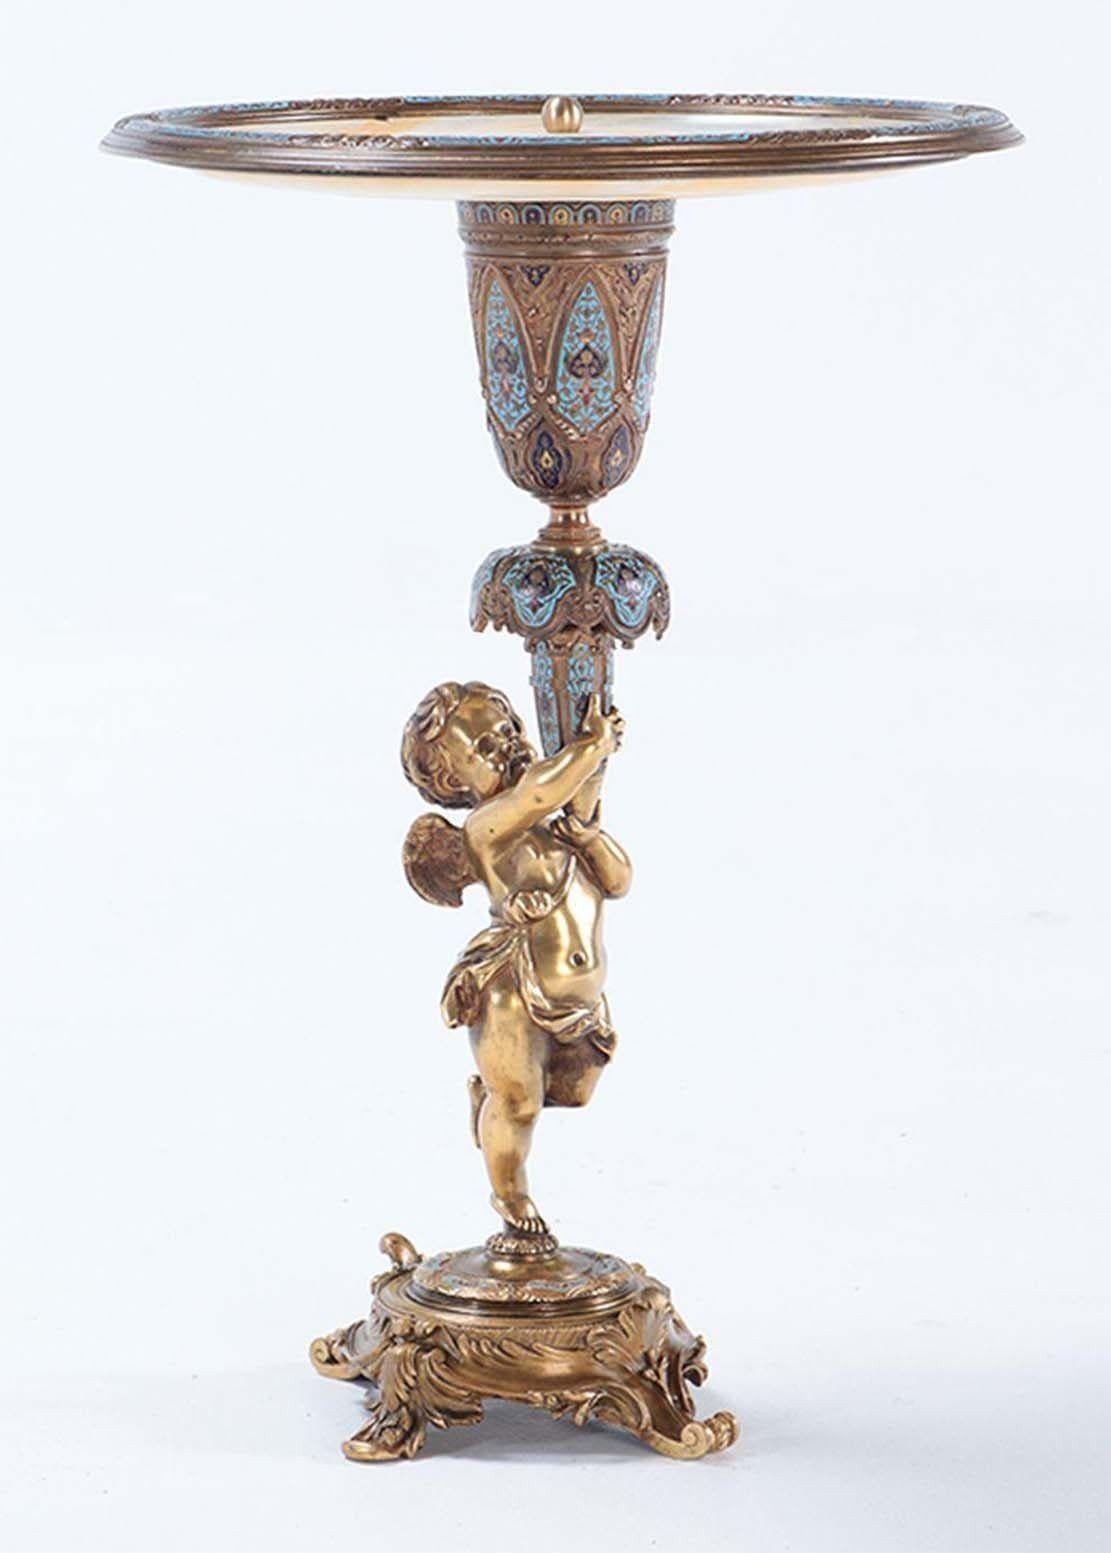 Dieser französische Tafelaufsatz aus dem 19. Jahrhundert zeigt die bemerkenswerte Kunstfertigkeit der Champlevé-Bronze in Kombination mit der Eleganz des Onyx. Das Mittelstück ist mit einer beeindruckenden Onyxplatte versehen, die der